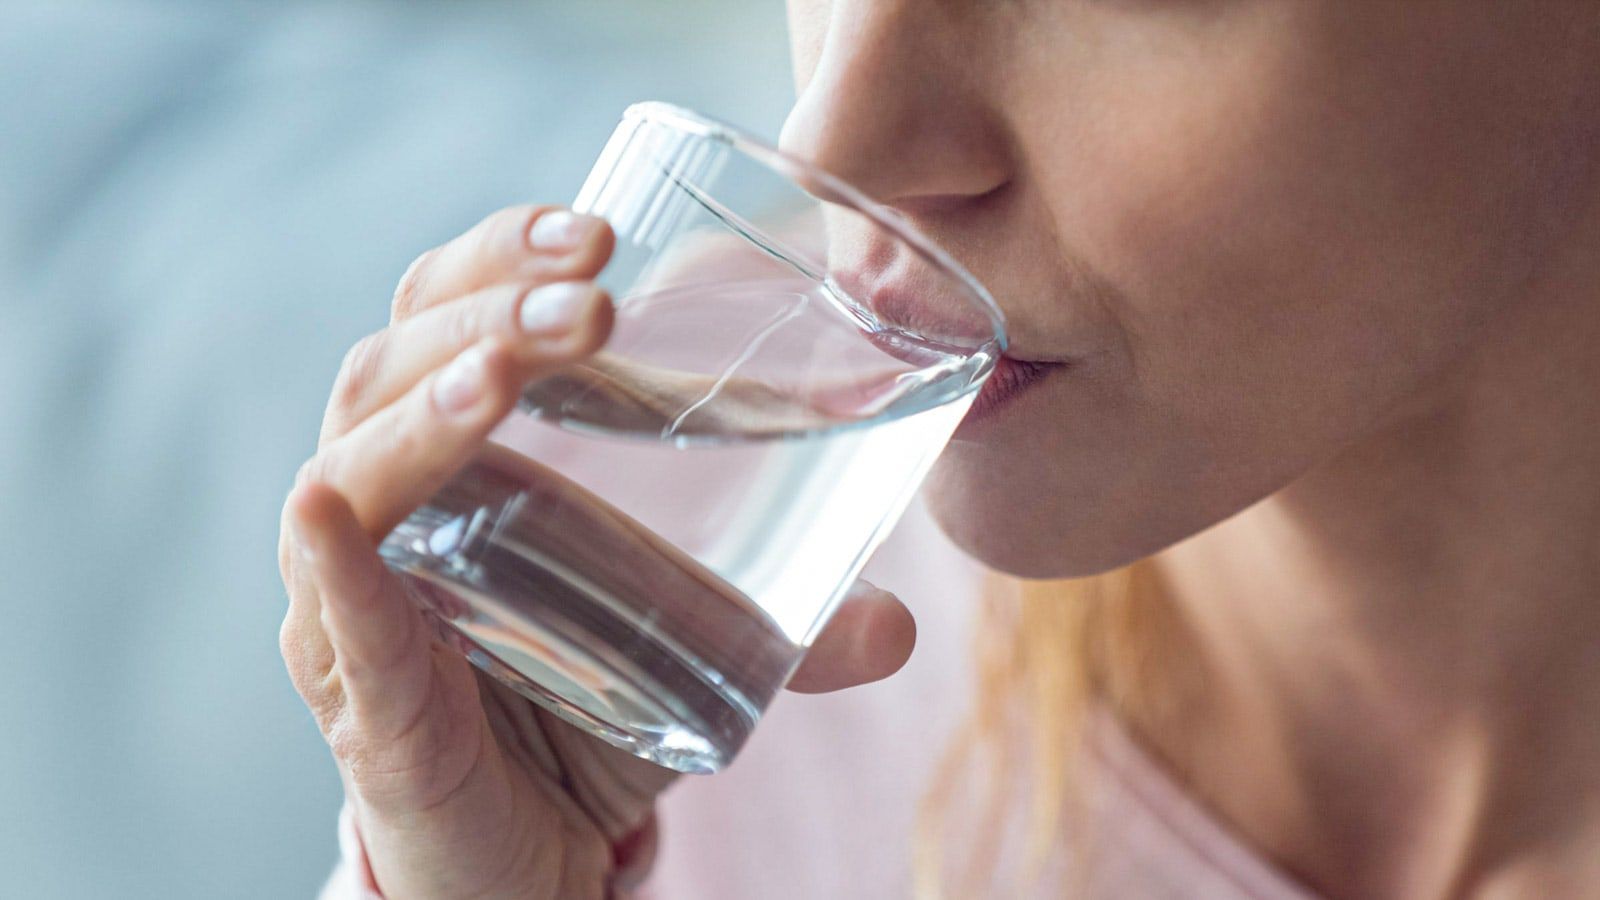 Masa Sih Terlalu Banyak Minum Air Putih Bisa Membahayakan Kesehatan? -  Semua Halaman - CewekBanget